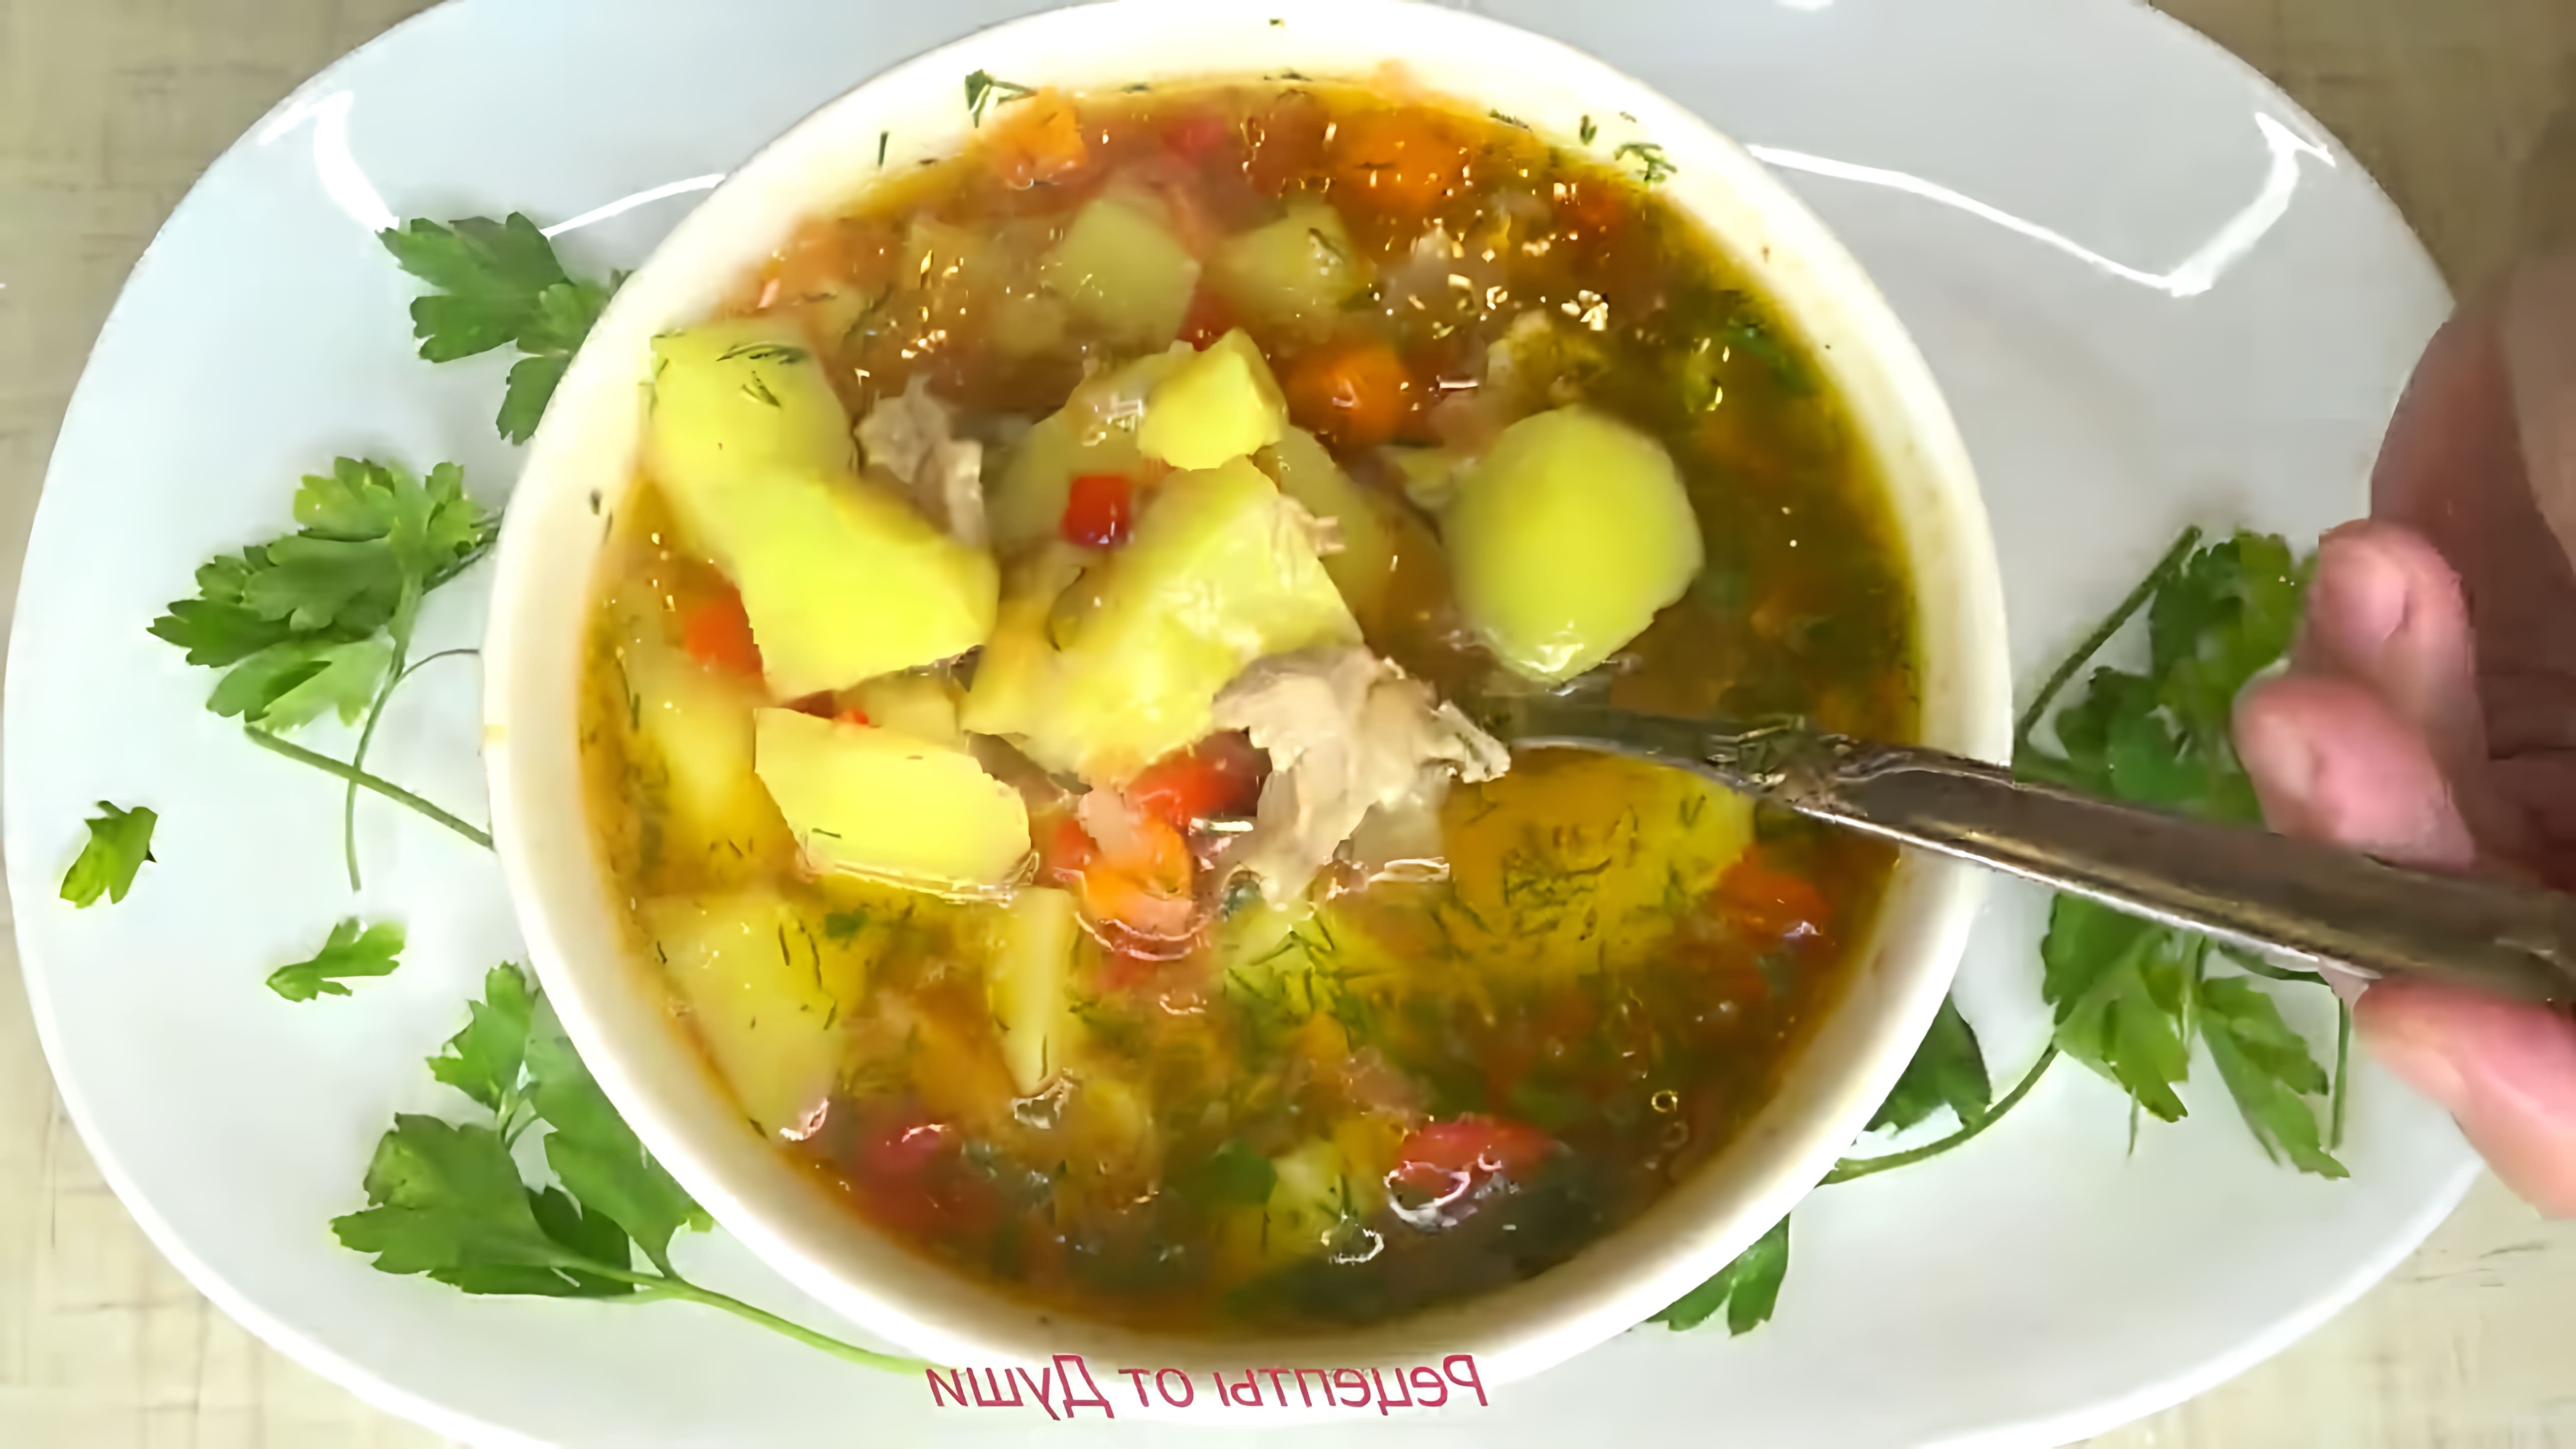 В этом видео демонстрируется процесс приготовления вкусного супа с болгарским перцем, картофелем и мясом